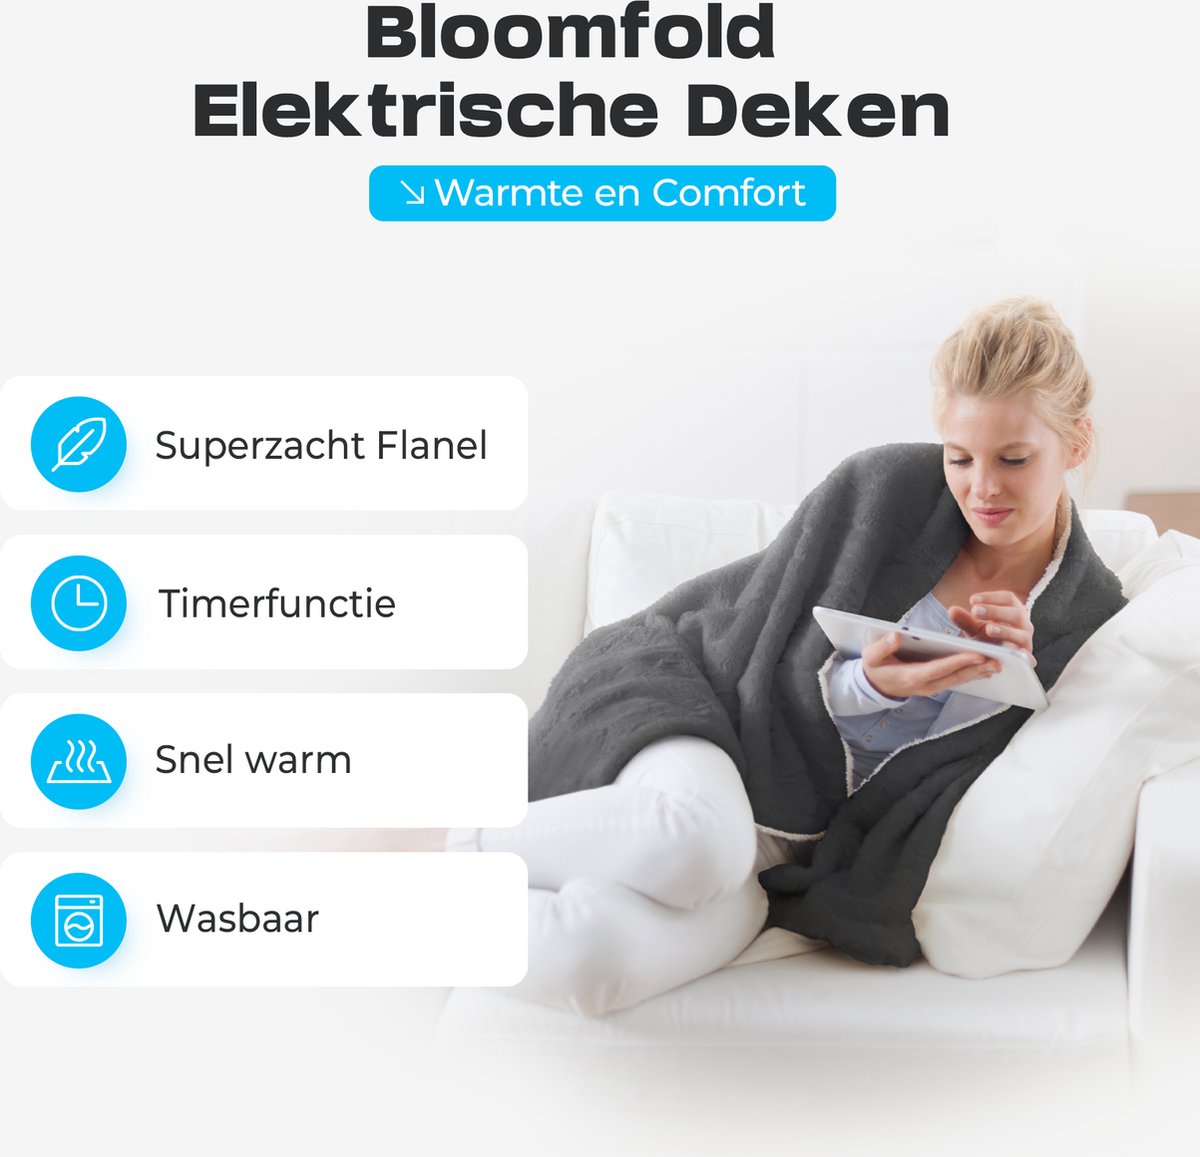 Bloomfold Elektrische Deken - 160 x 130 cm